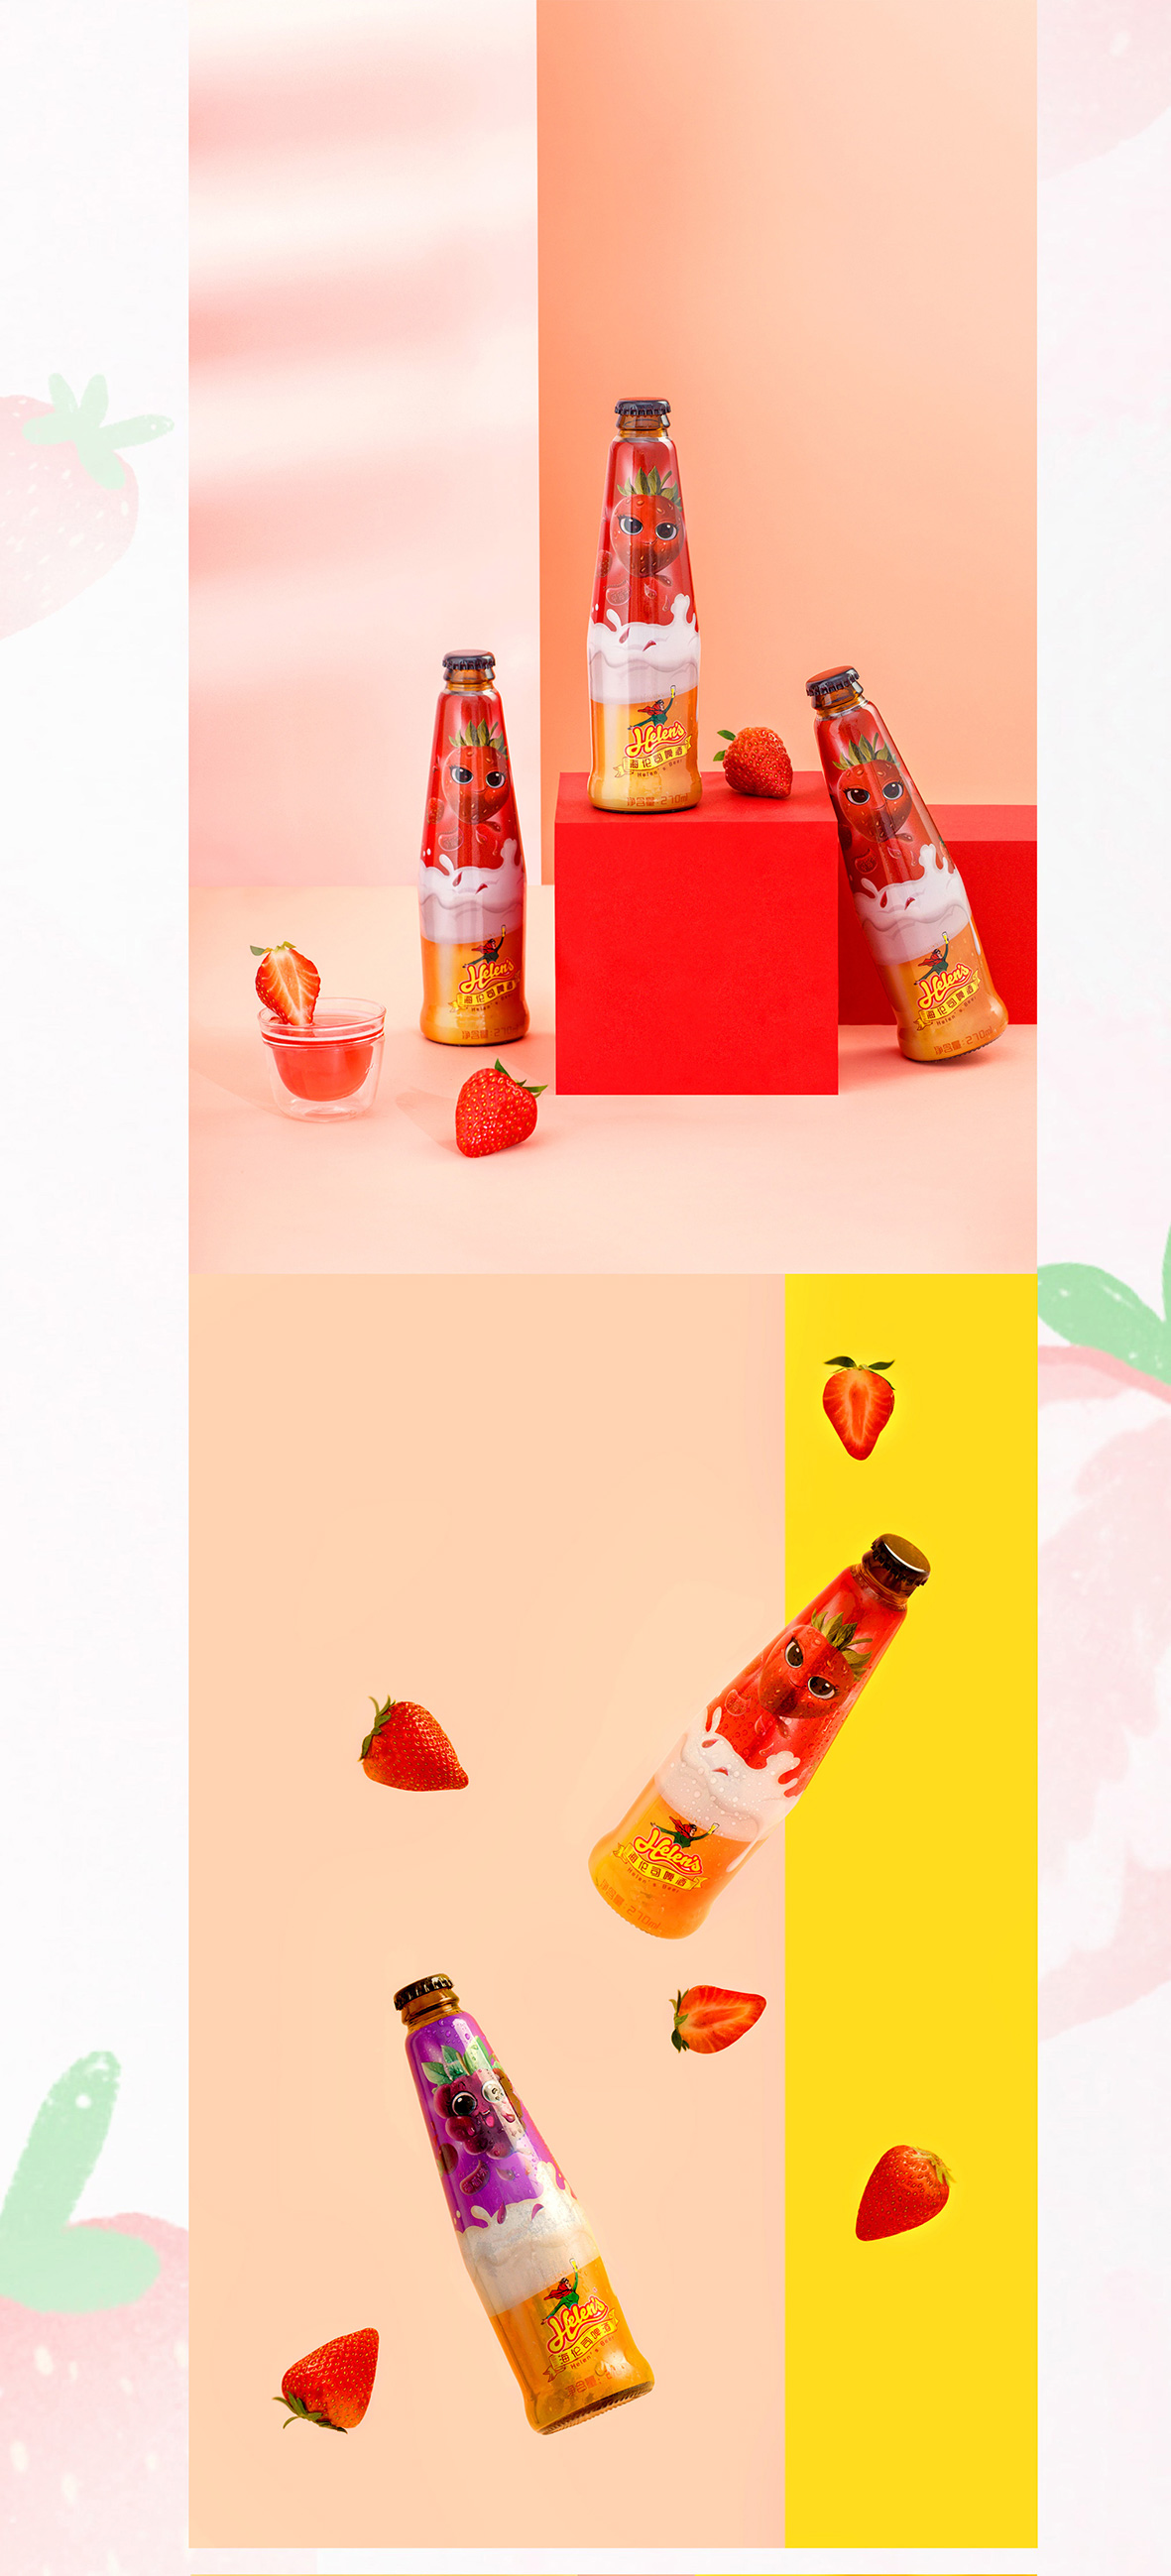 年轻时尚的草莓味果啤包装设计 海伦司啤酒标签设计 啤酒包装设计 手绘啤酒包装设计